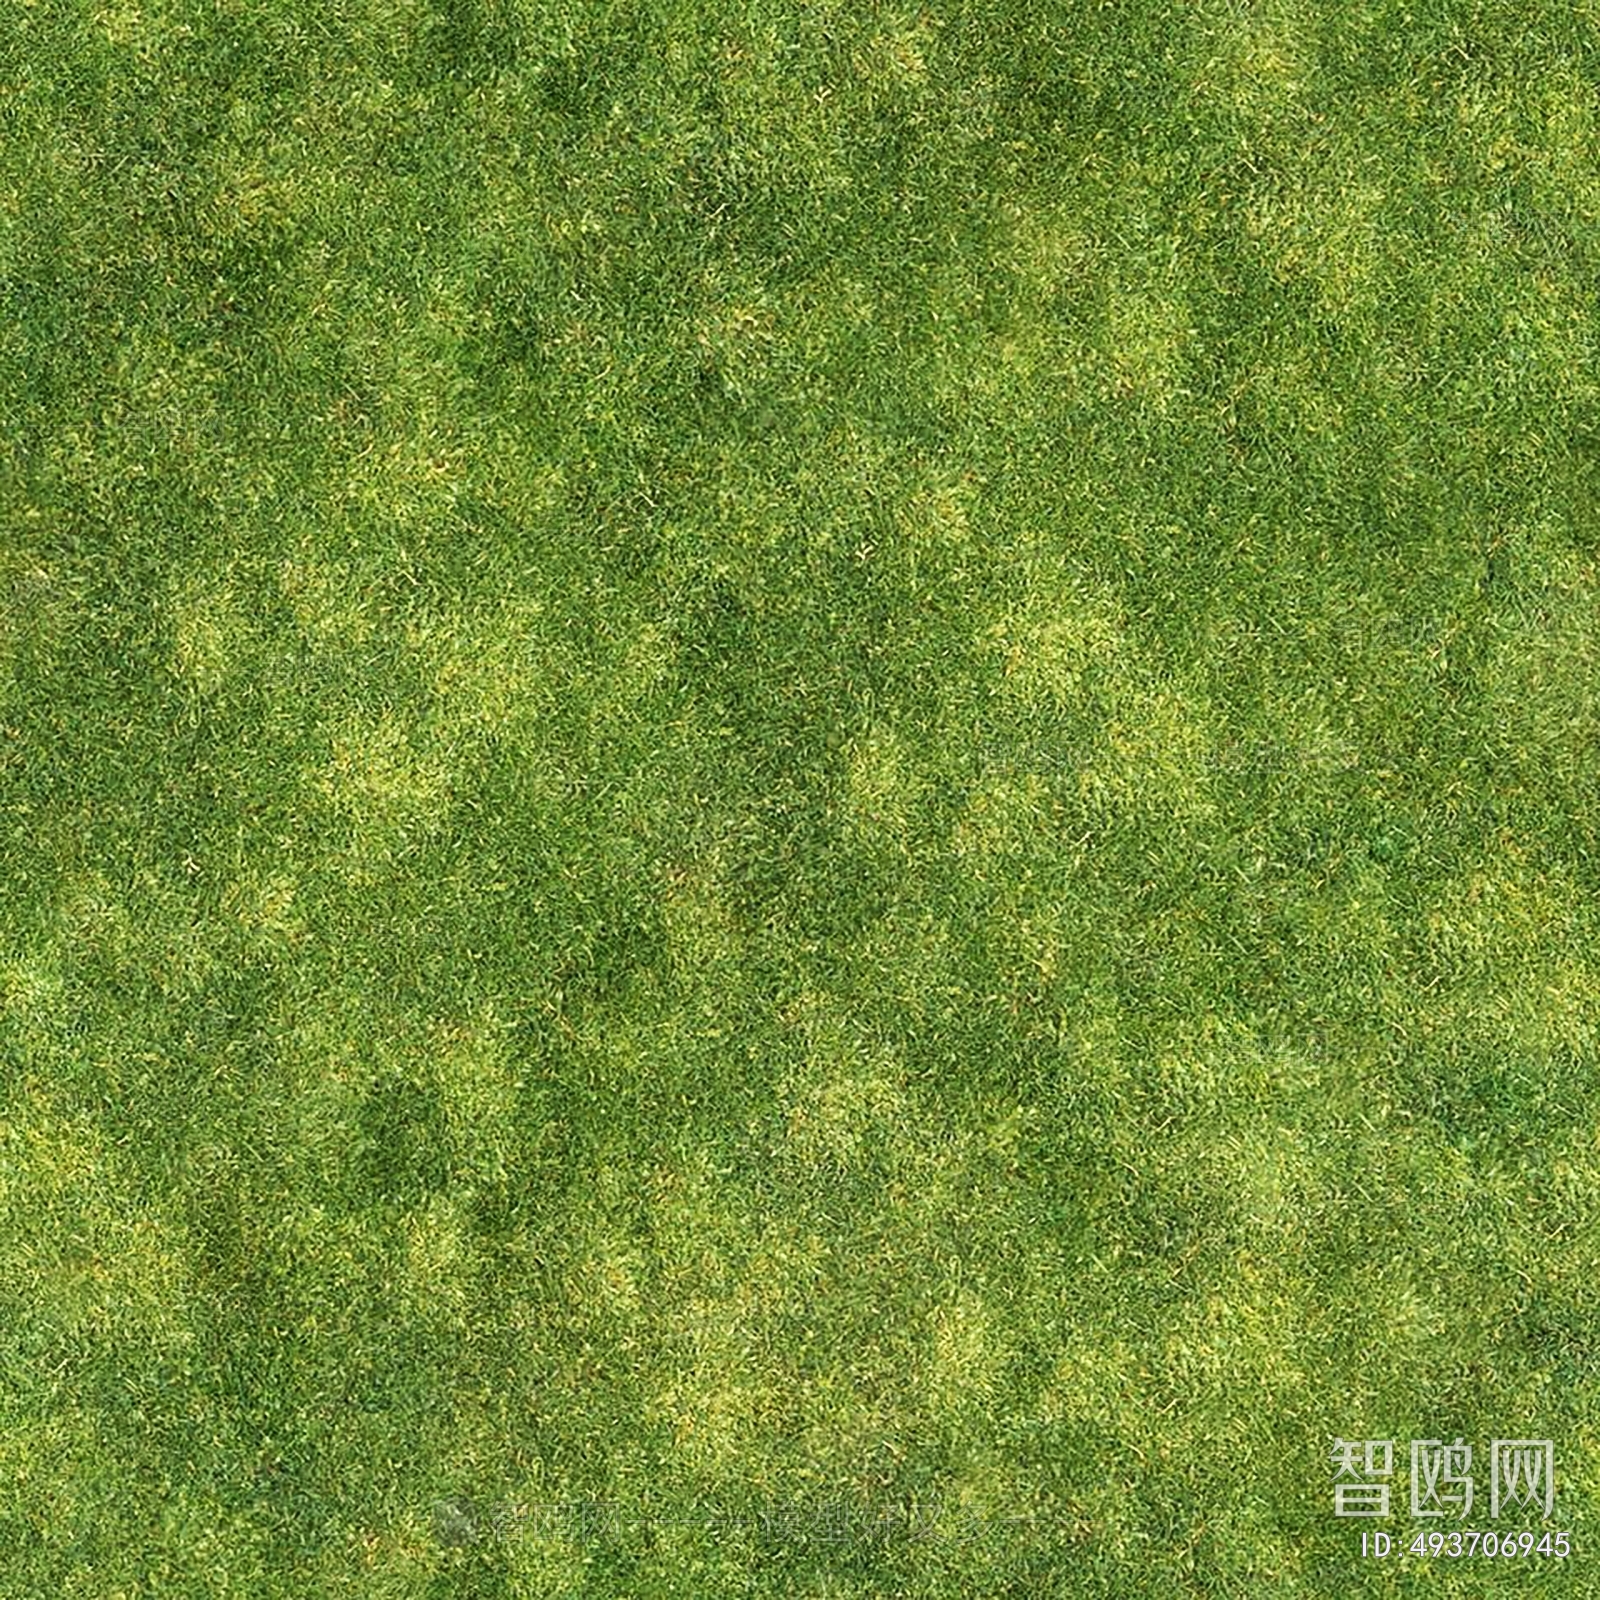 地面绿化草皮地面贴图